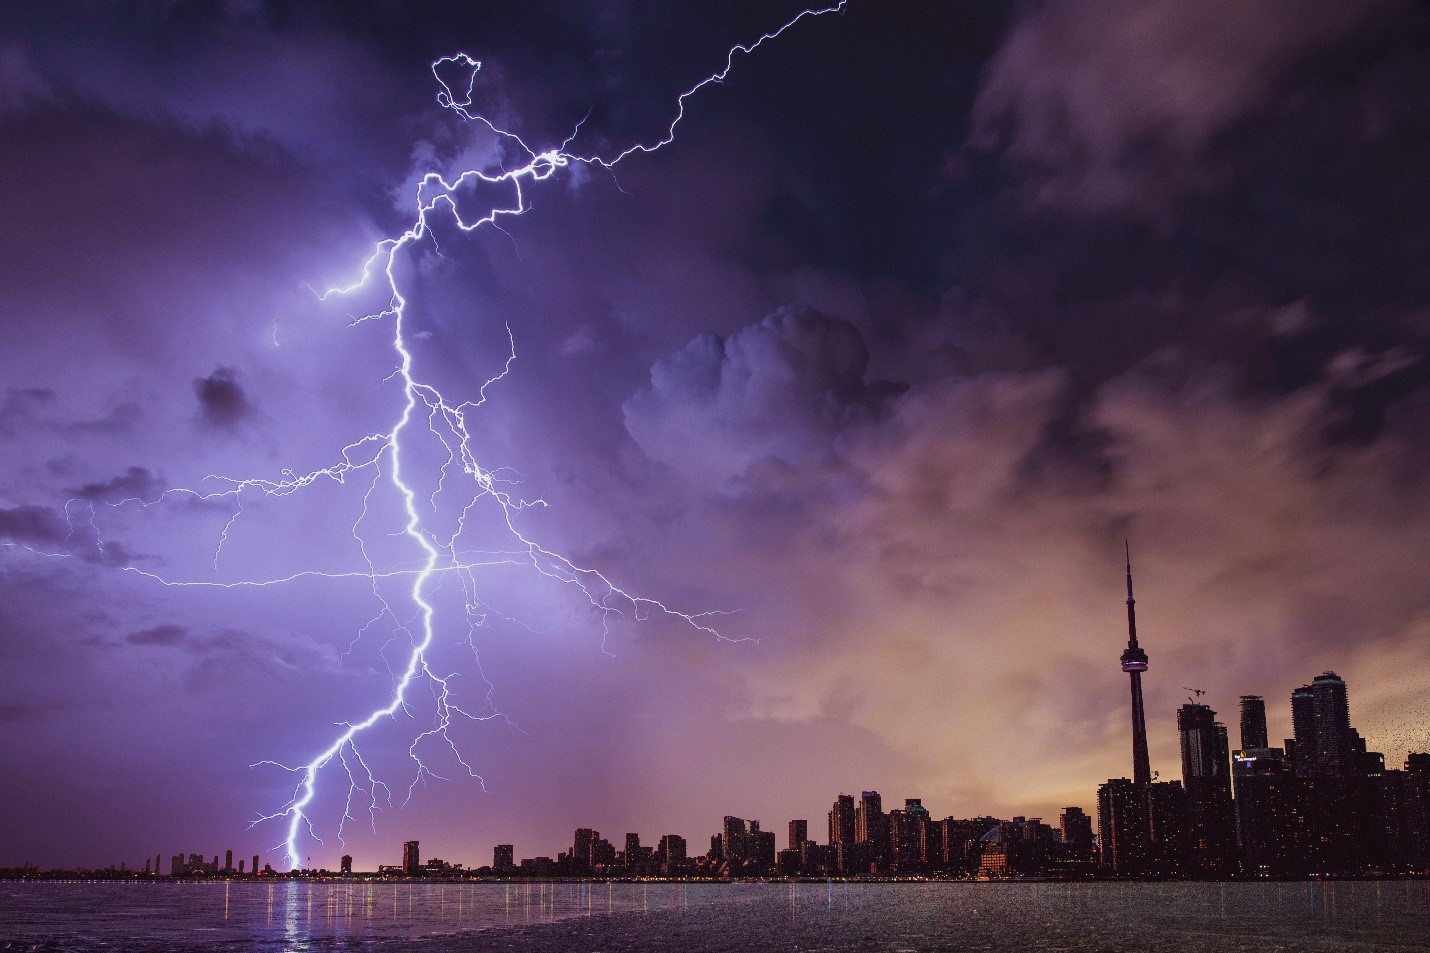 lightning strike next to a city